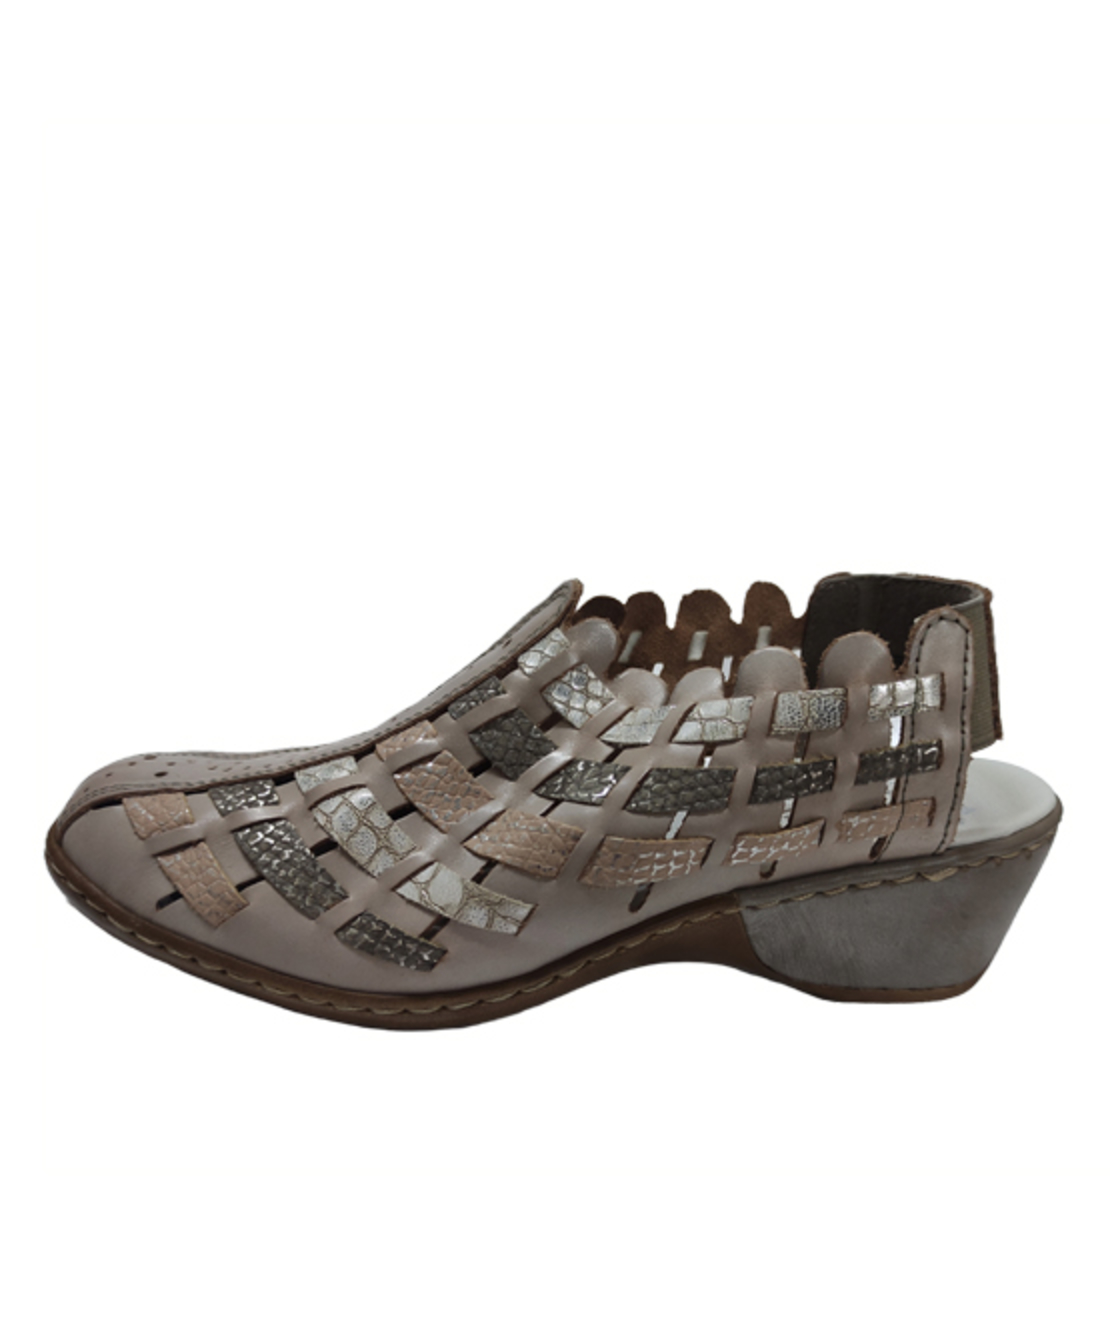 Ricker Sandals - 47156-43 - Women